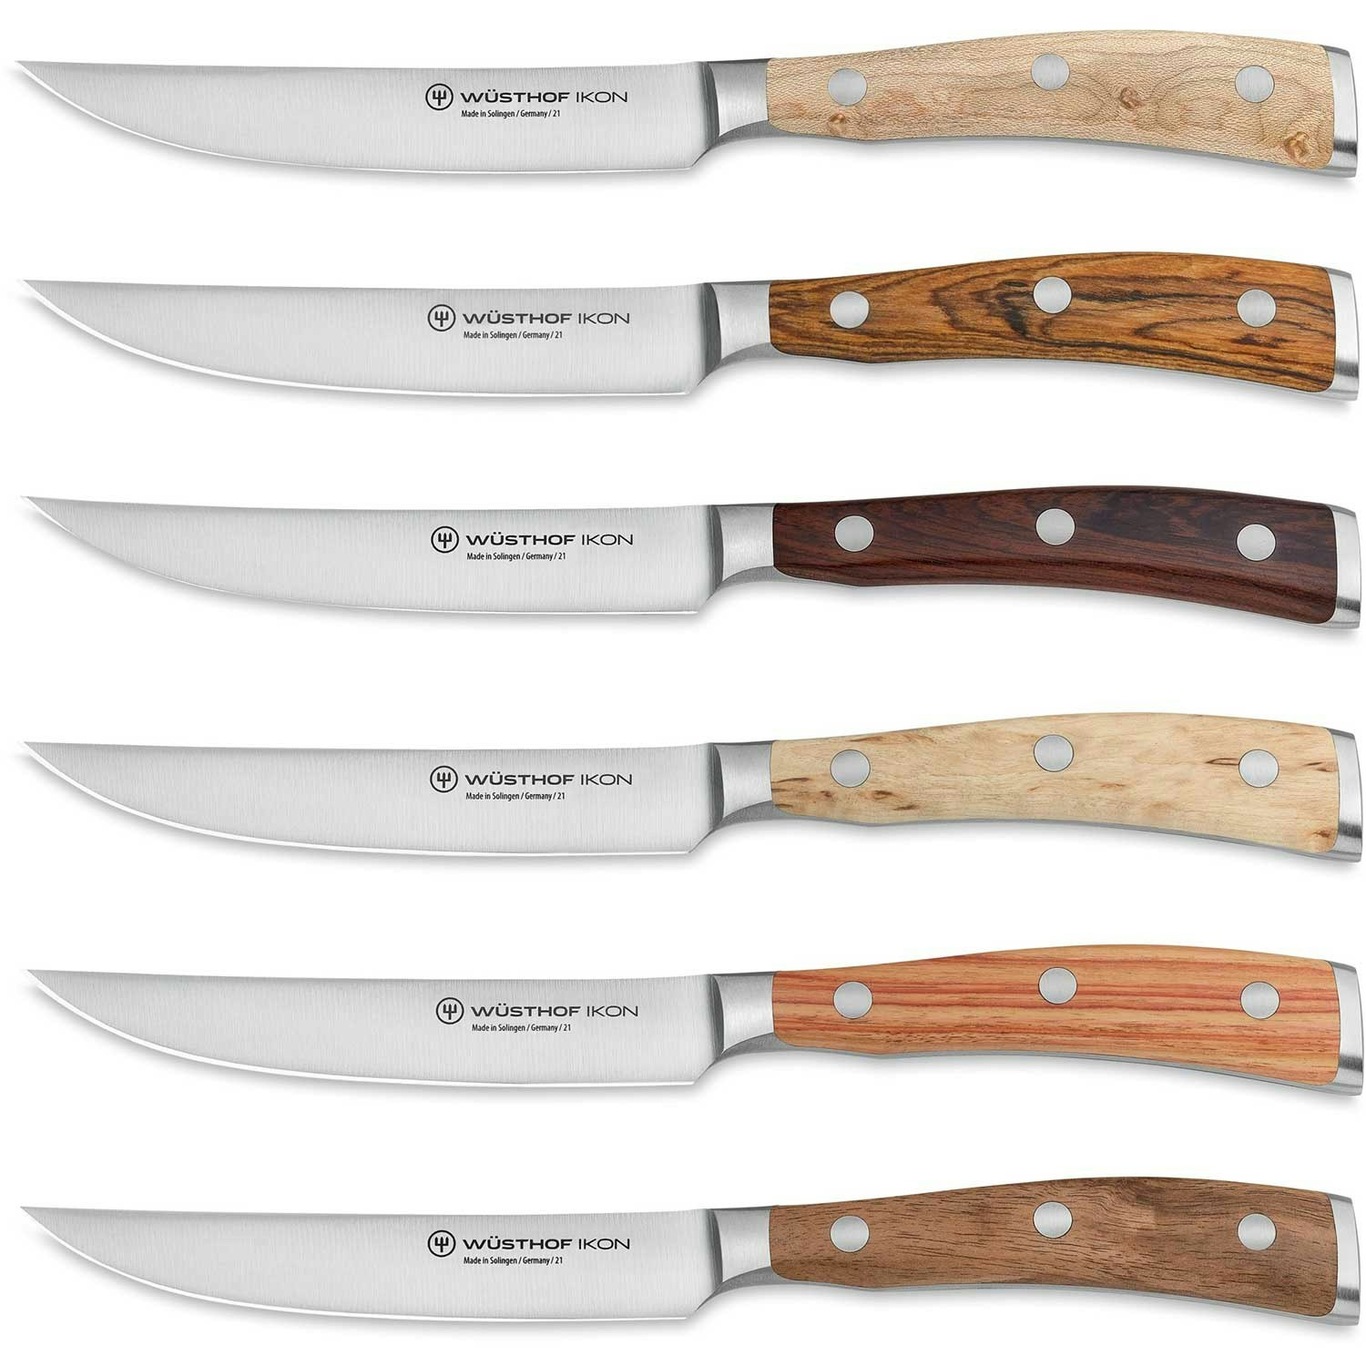 https://royaldesign.com/image/2/wusthof-ikon-steak-knives-with-case-0?w=800&quality=80